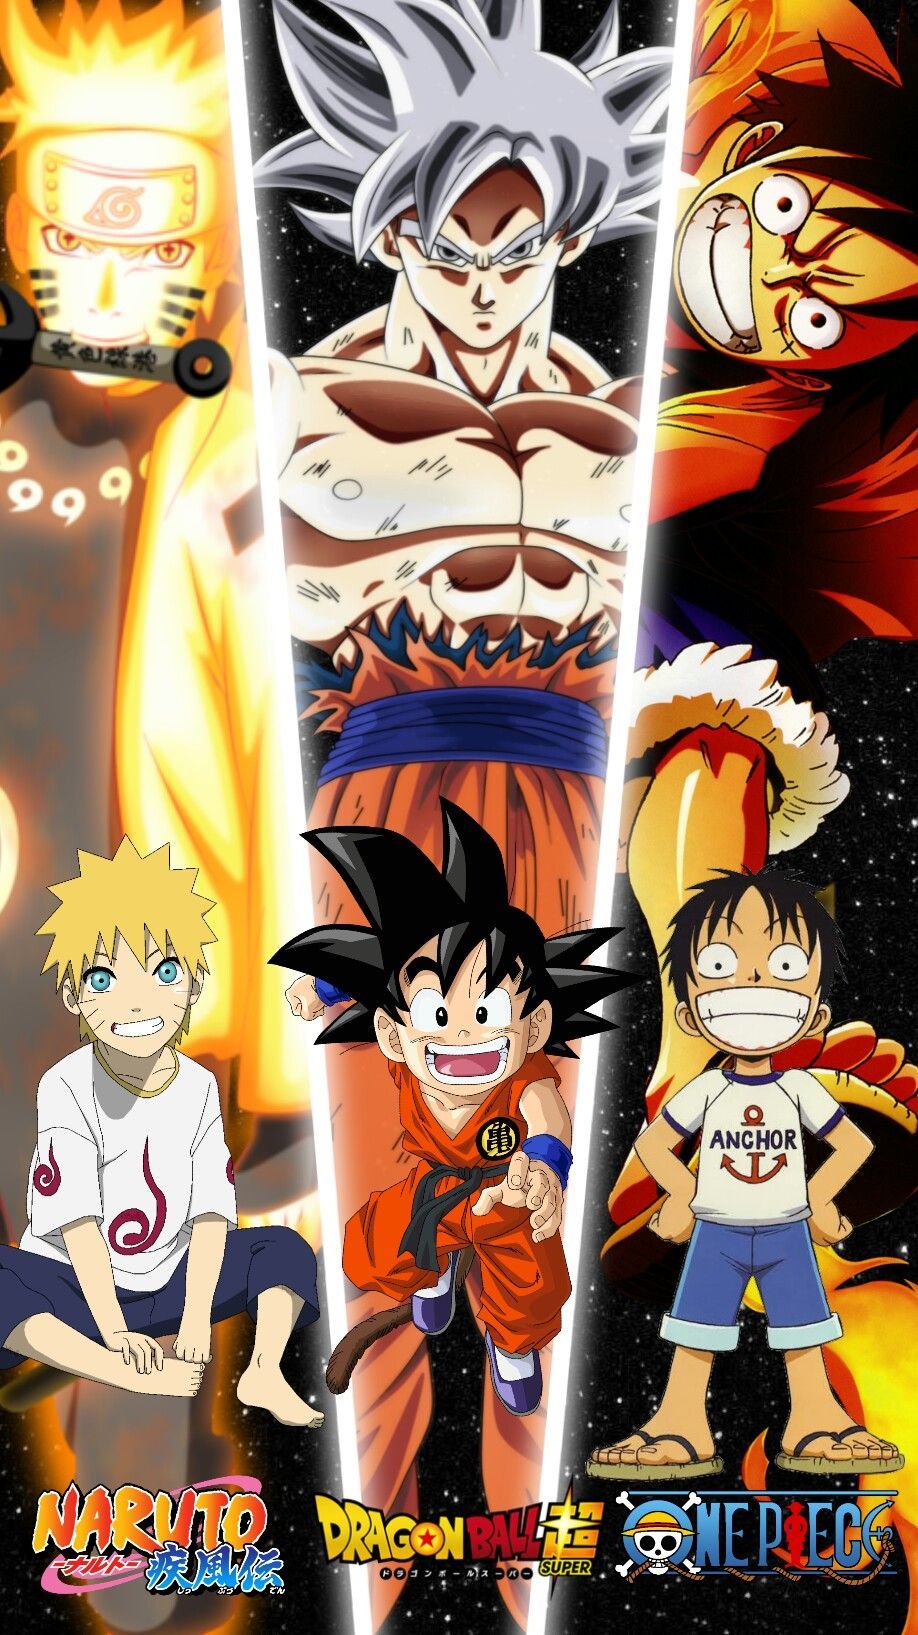 naruto, goku & luffy. All anime characters, Anime dragon ball super, Anime